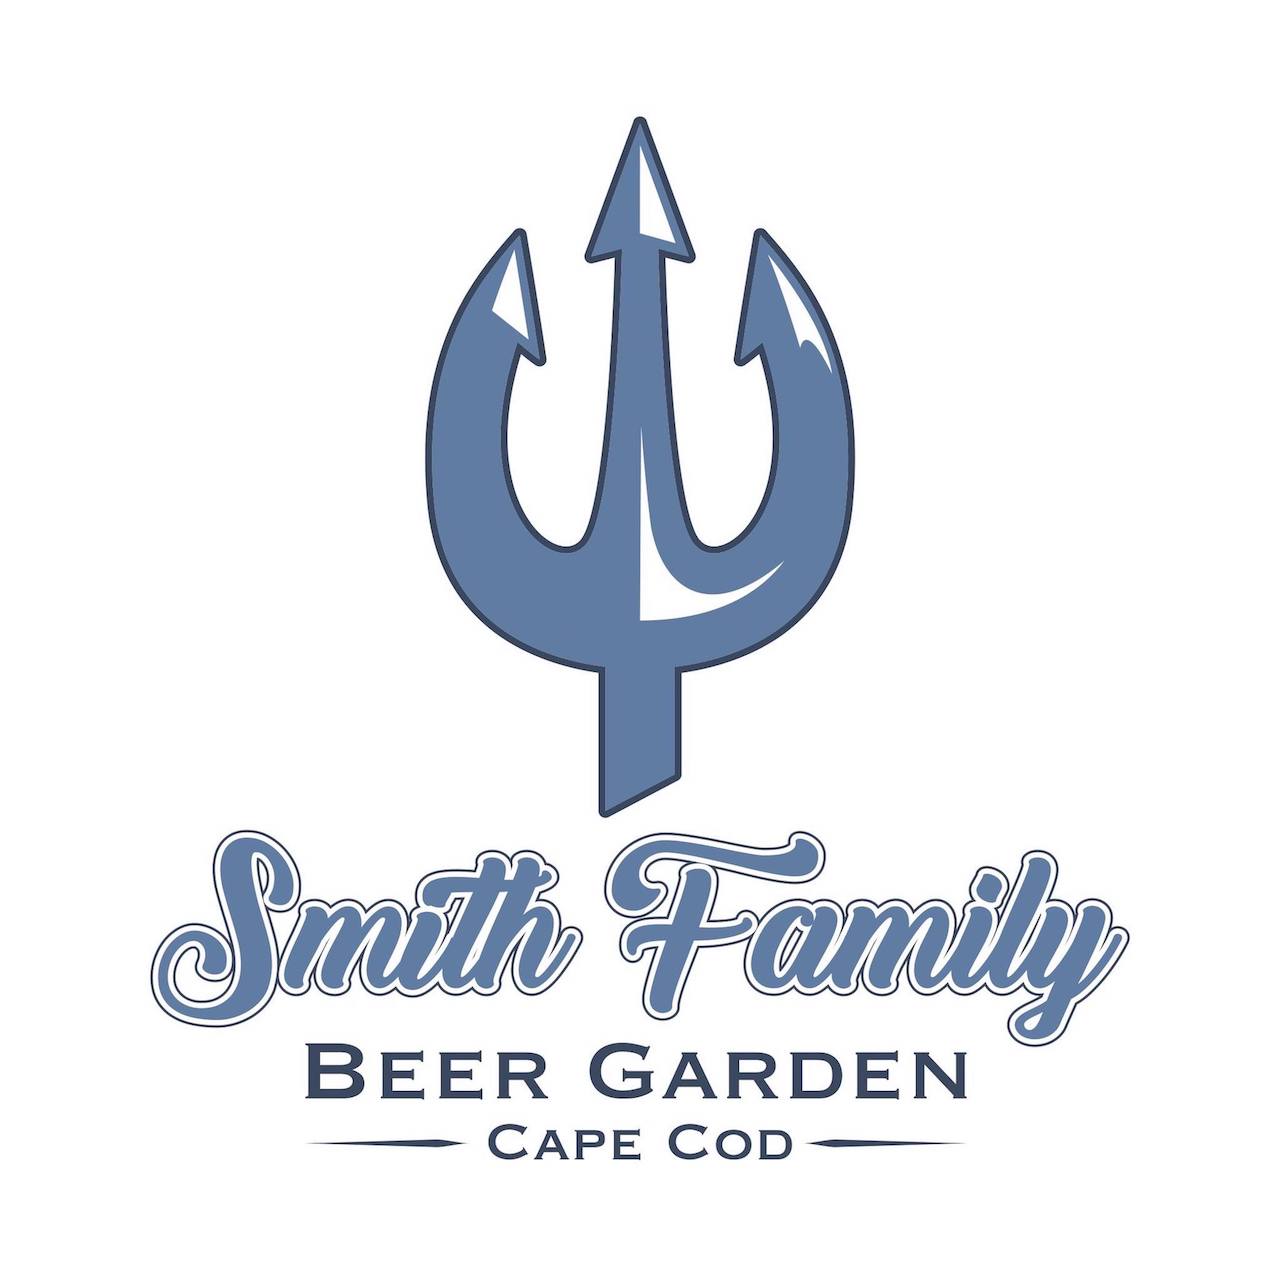 Smith Family Beer Garden